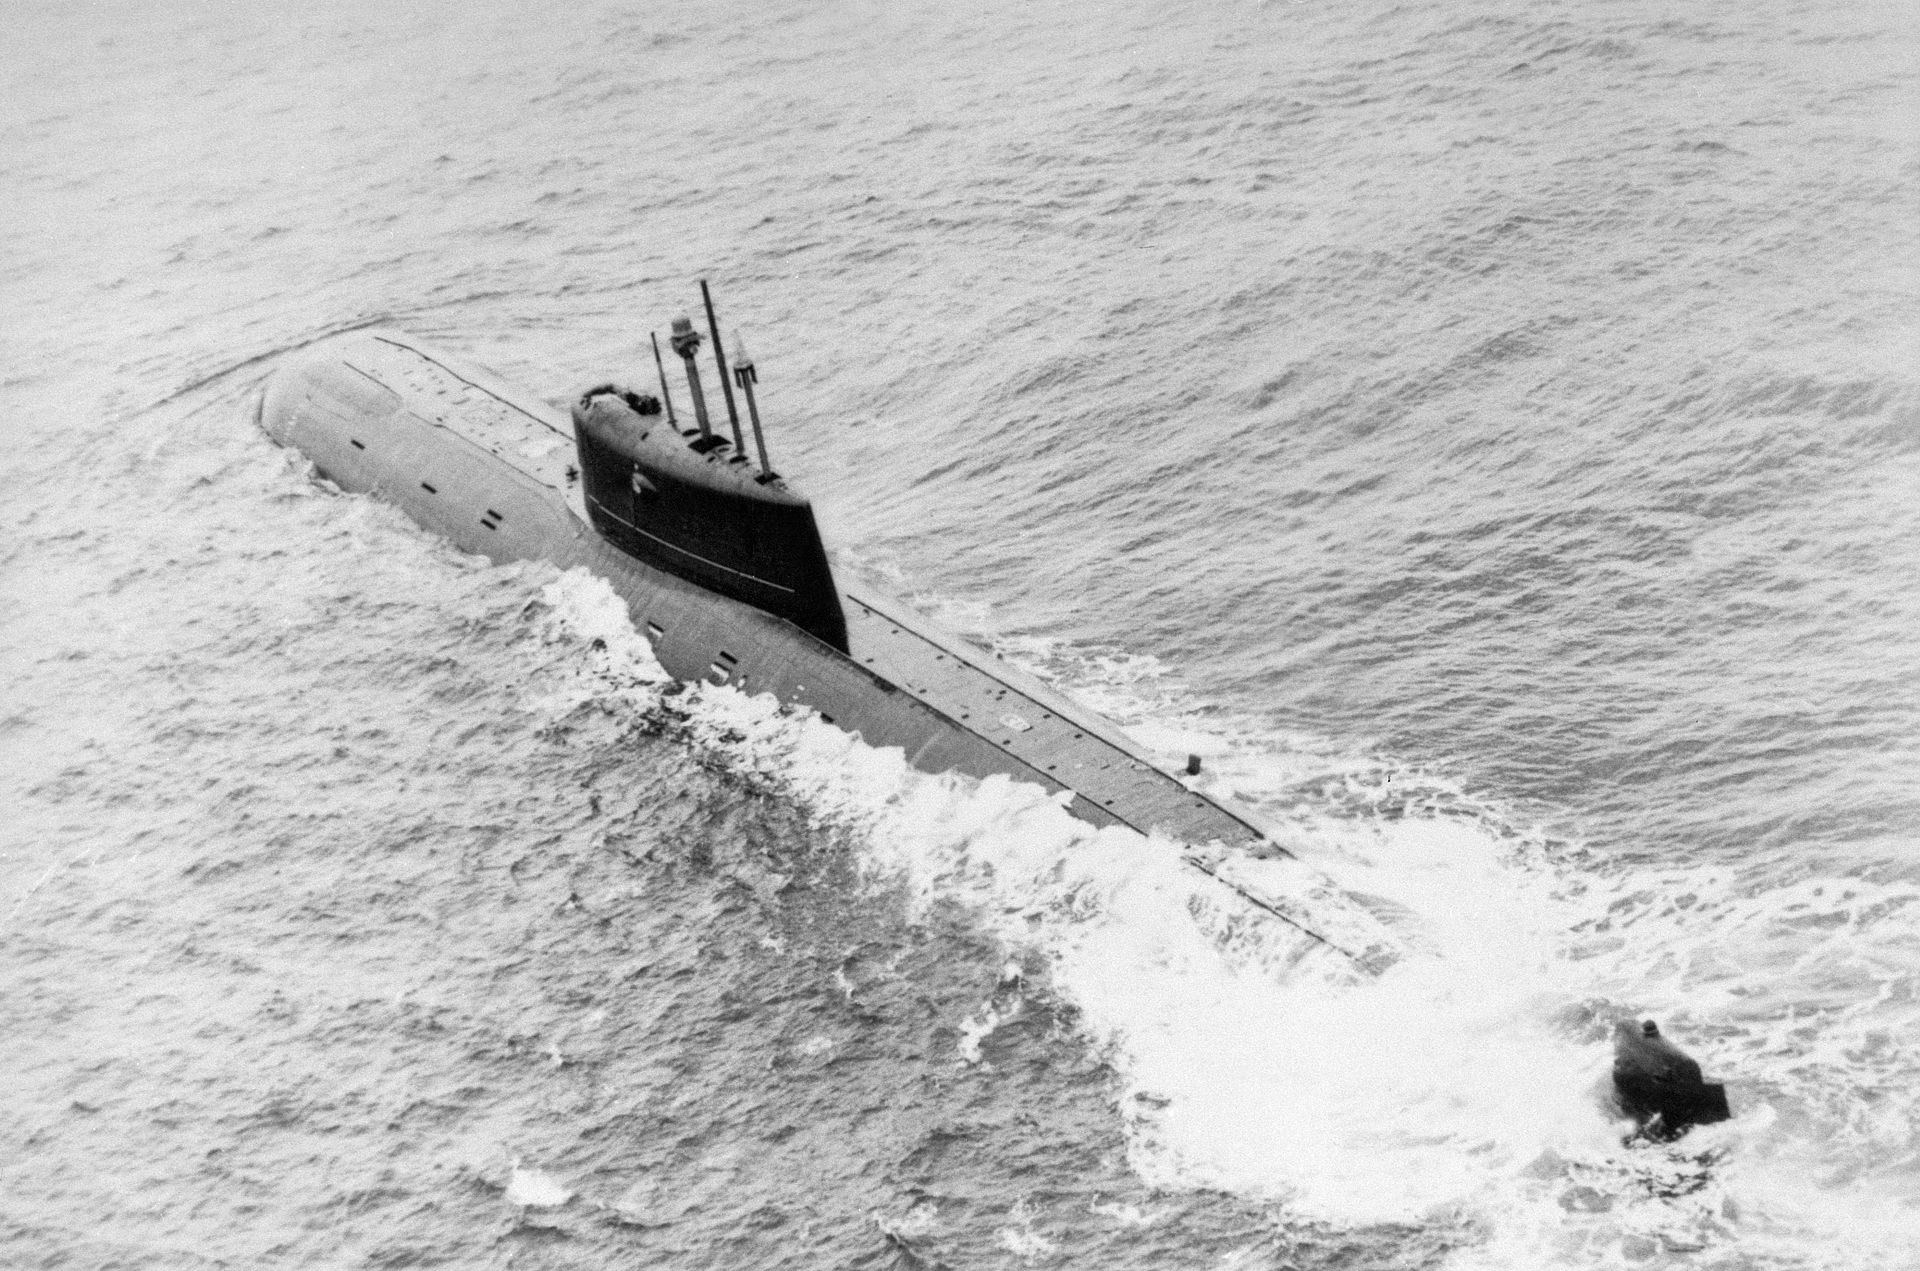 K-278 Komsomolets submarine